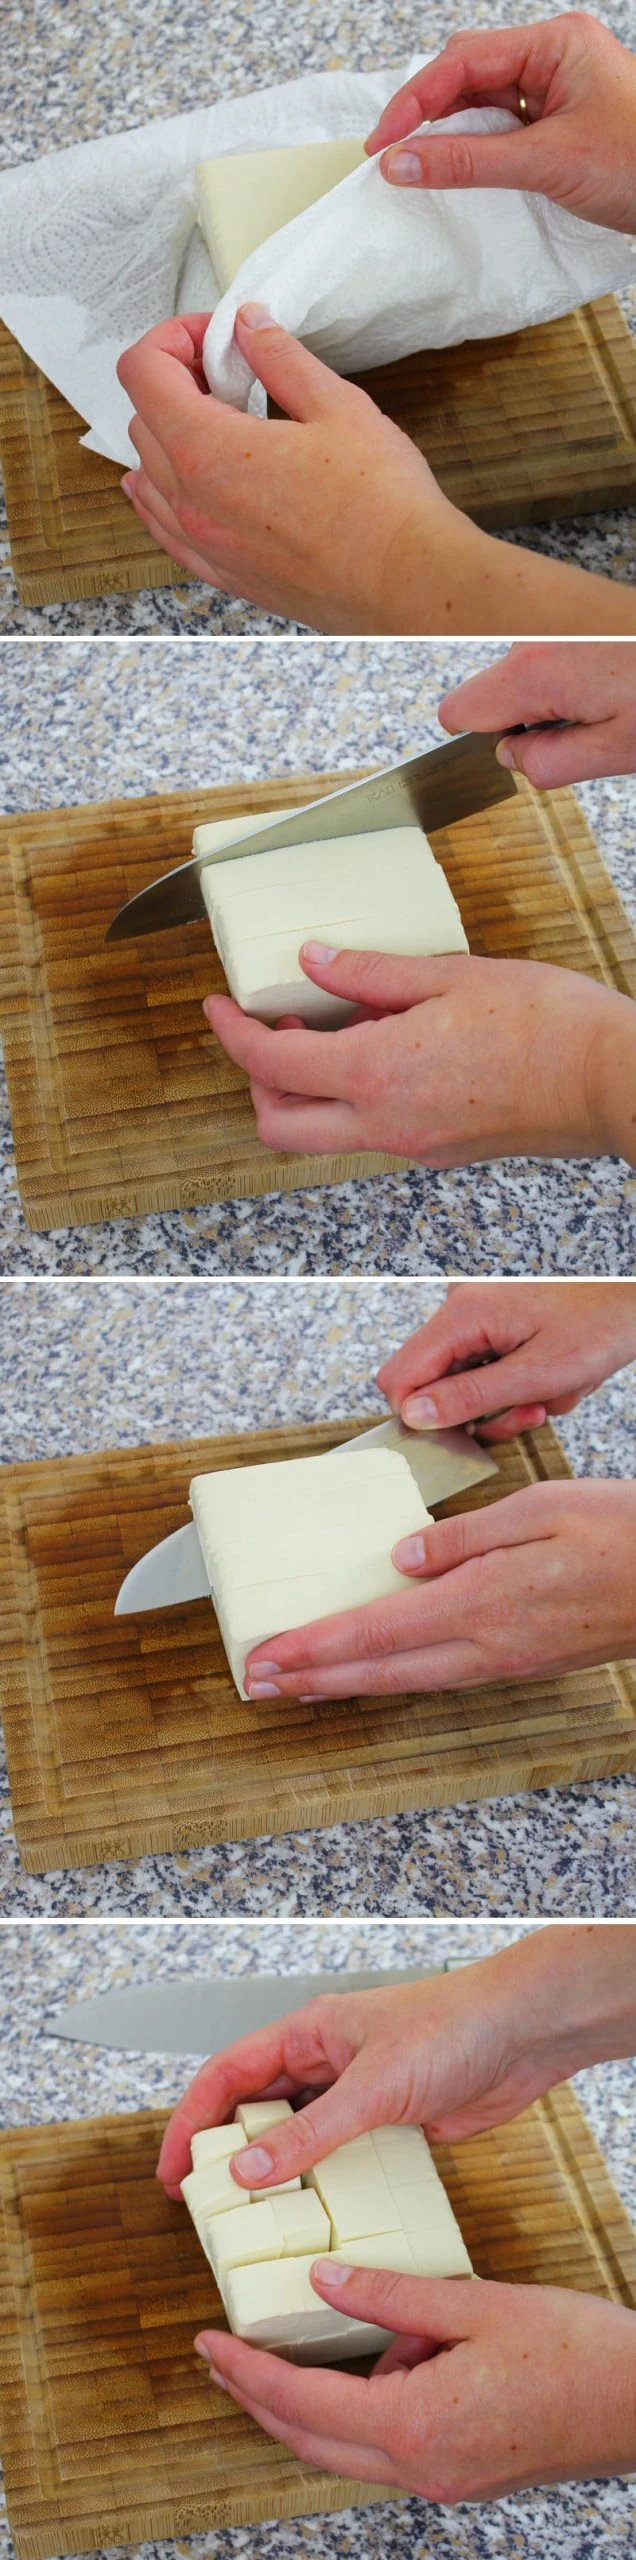 Kenchinjiru Schritt 7 Tofu schneiden